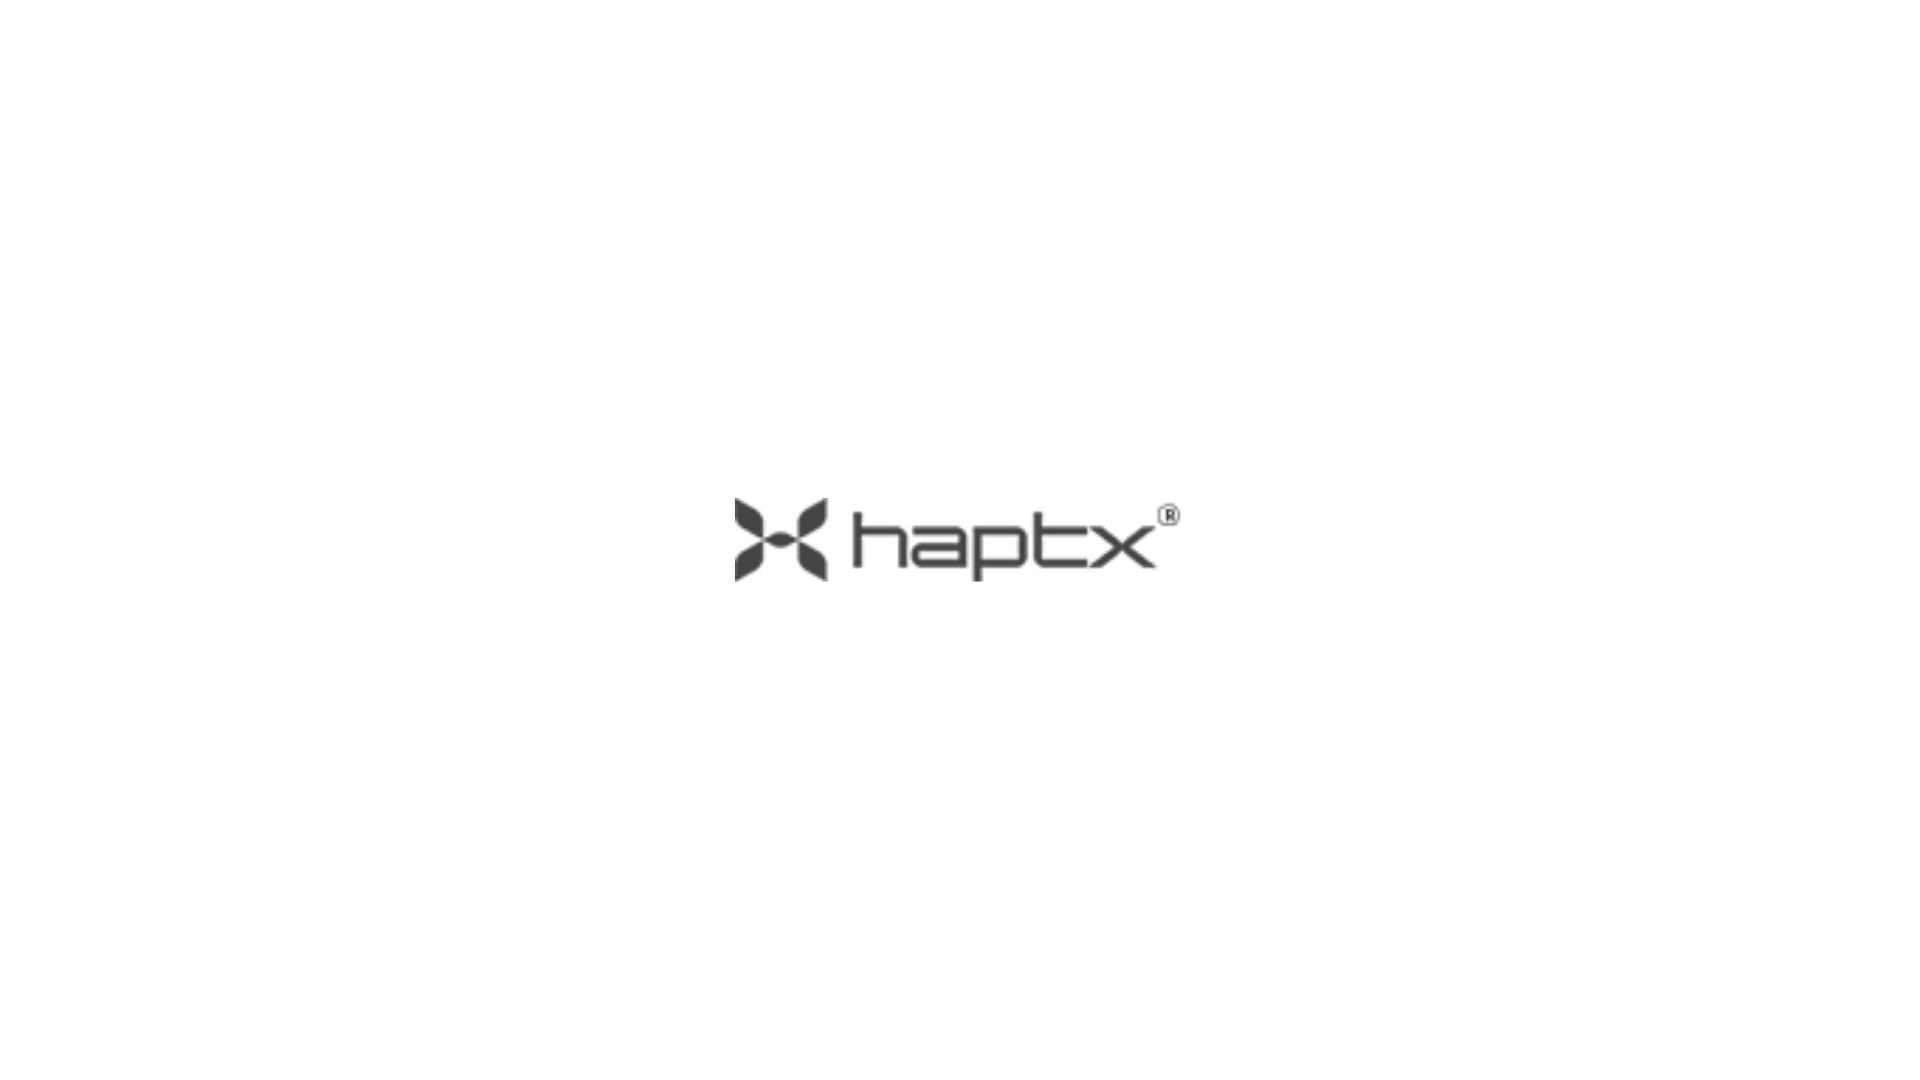 Haptx